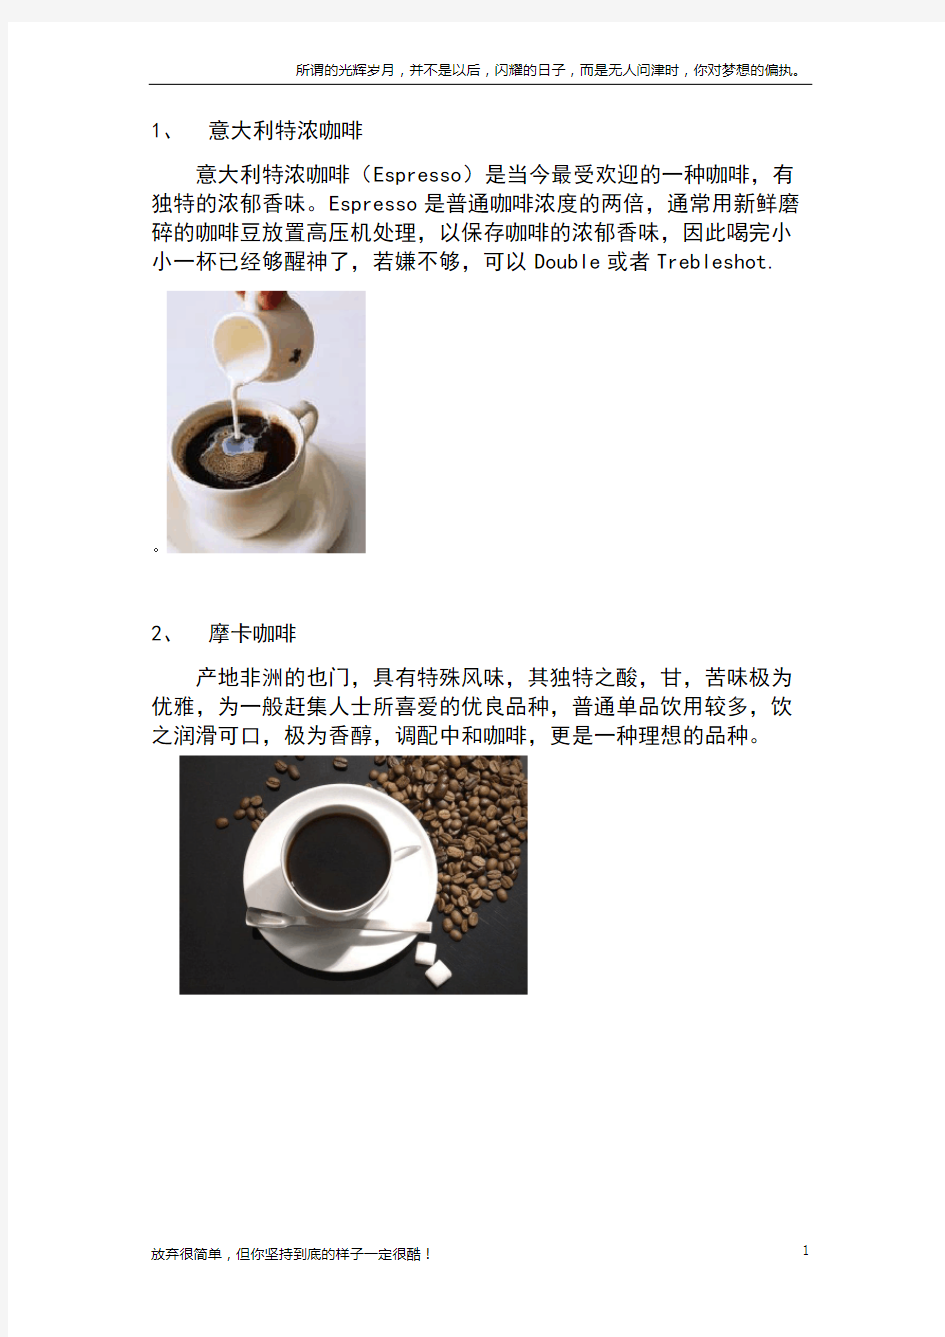 挂耳式咖啡种类口味介绍(新)